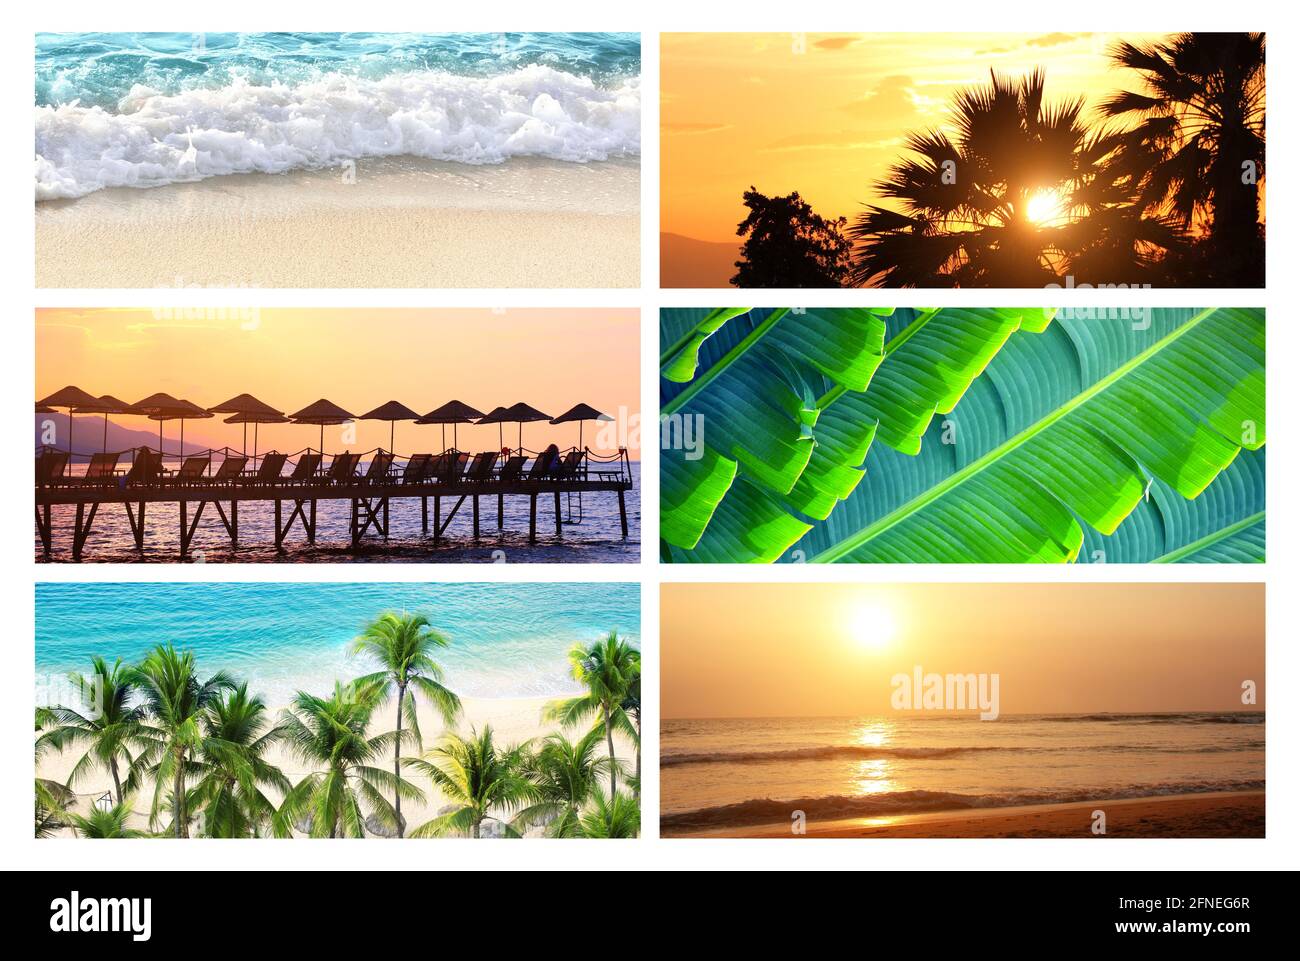 Concetto di viaggio e relax. Set di striscioni orizzontali con palma, sabbia e onde oceaniche, silhouette di ombrelloni e sedie a sdraio sullo sfondo del cielo del tramonto Foto Stock